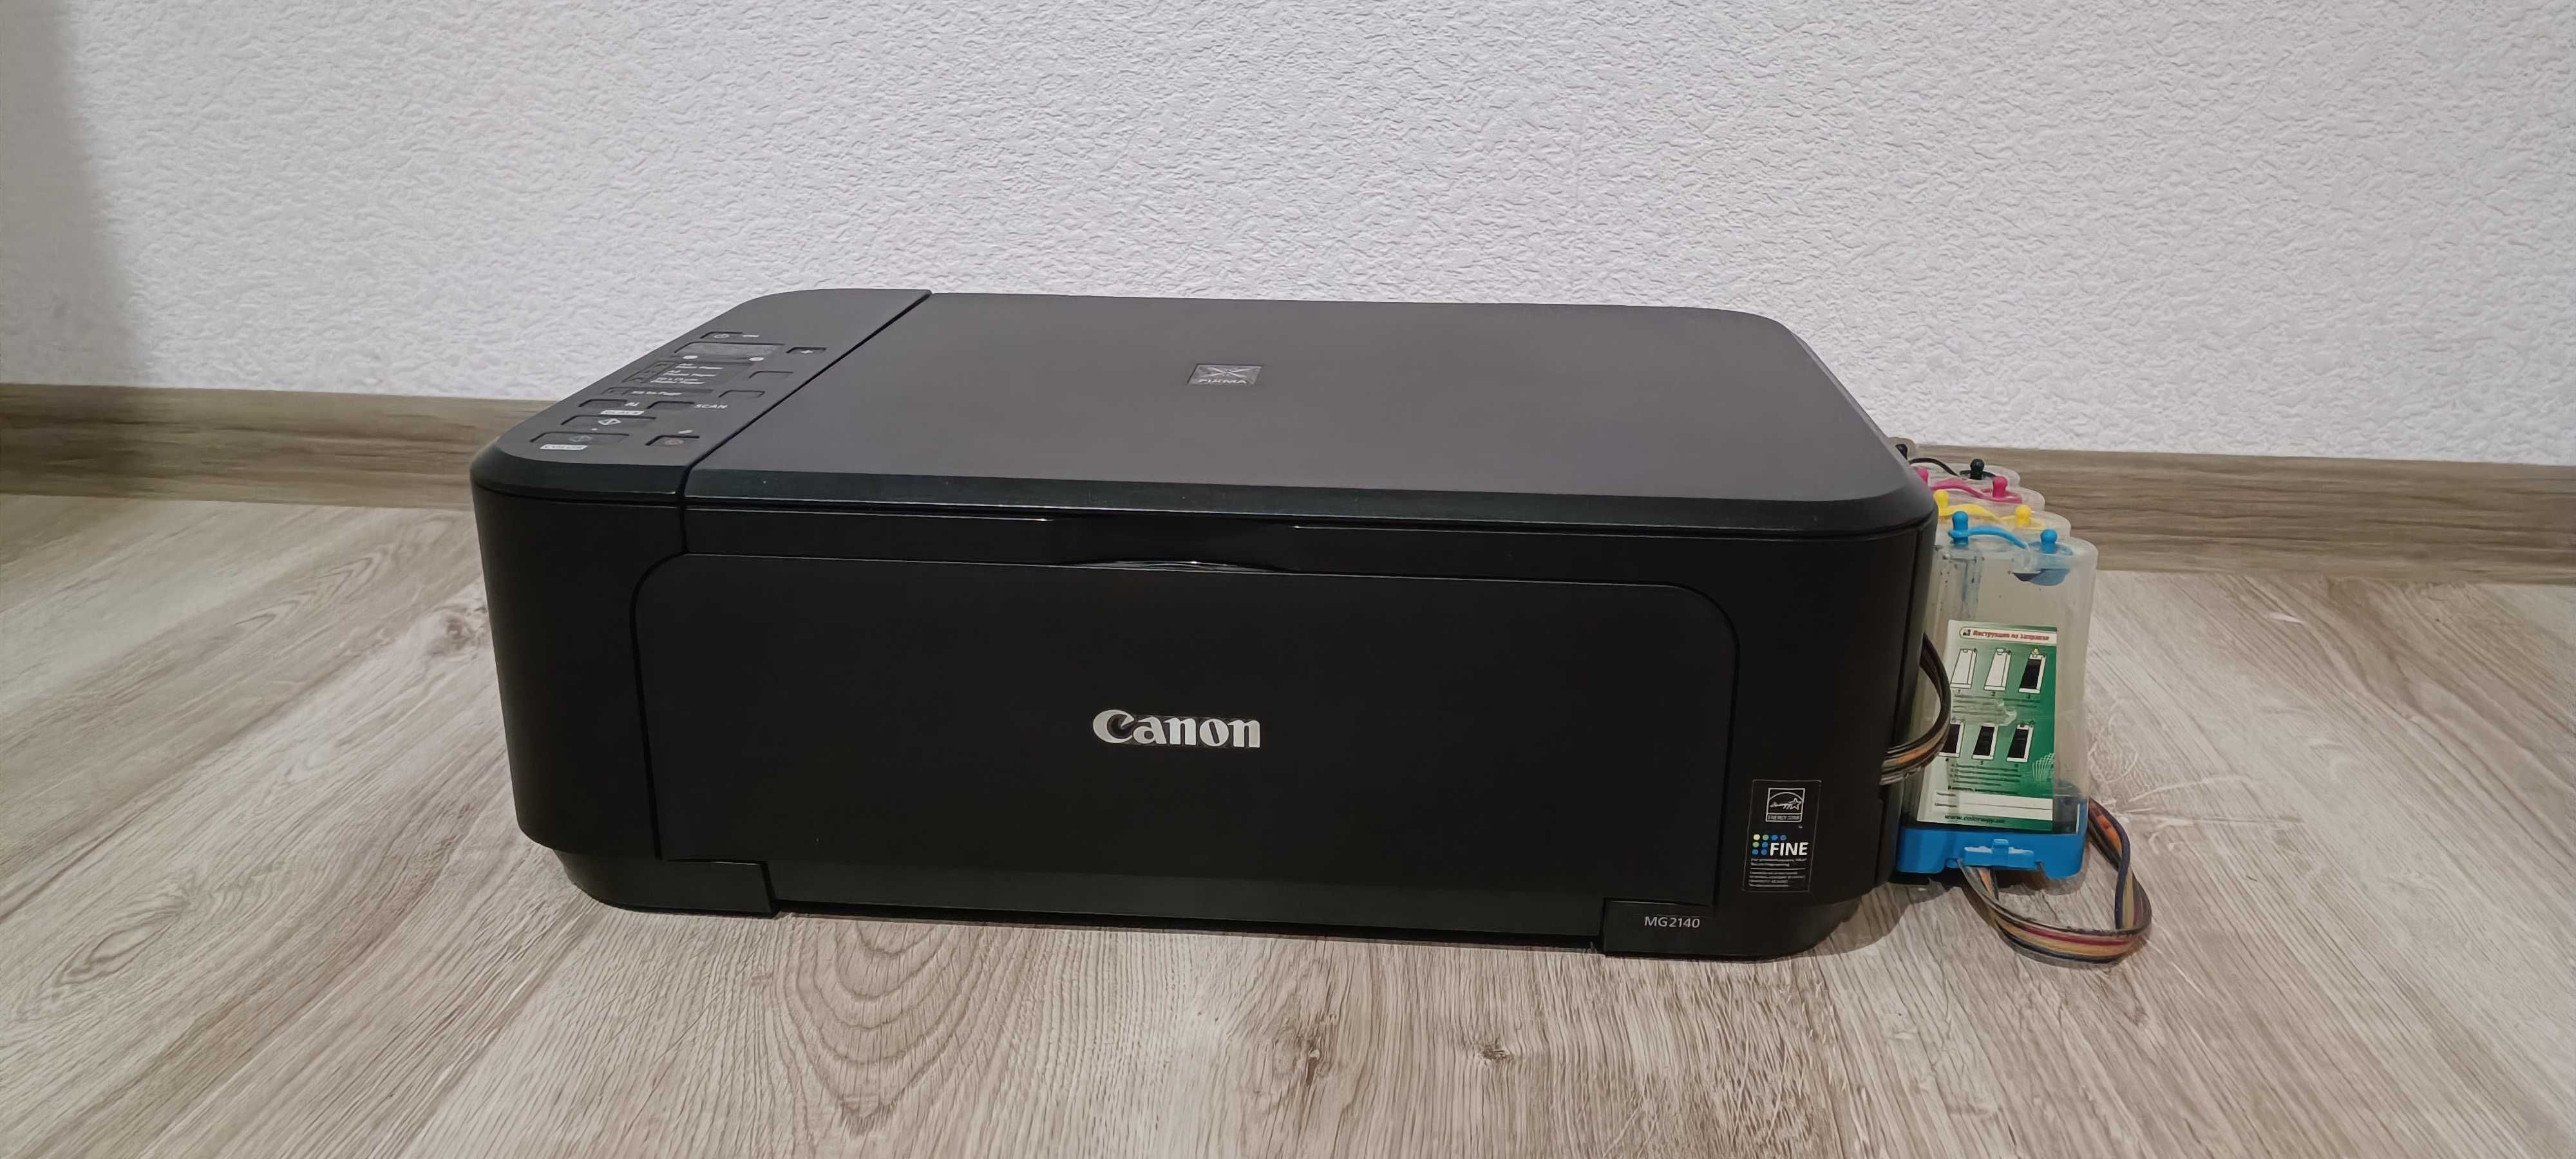 Принтер Canon MG2140